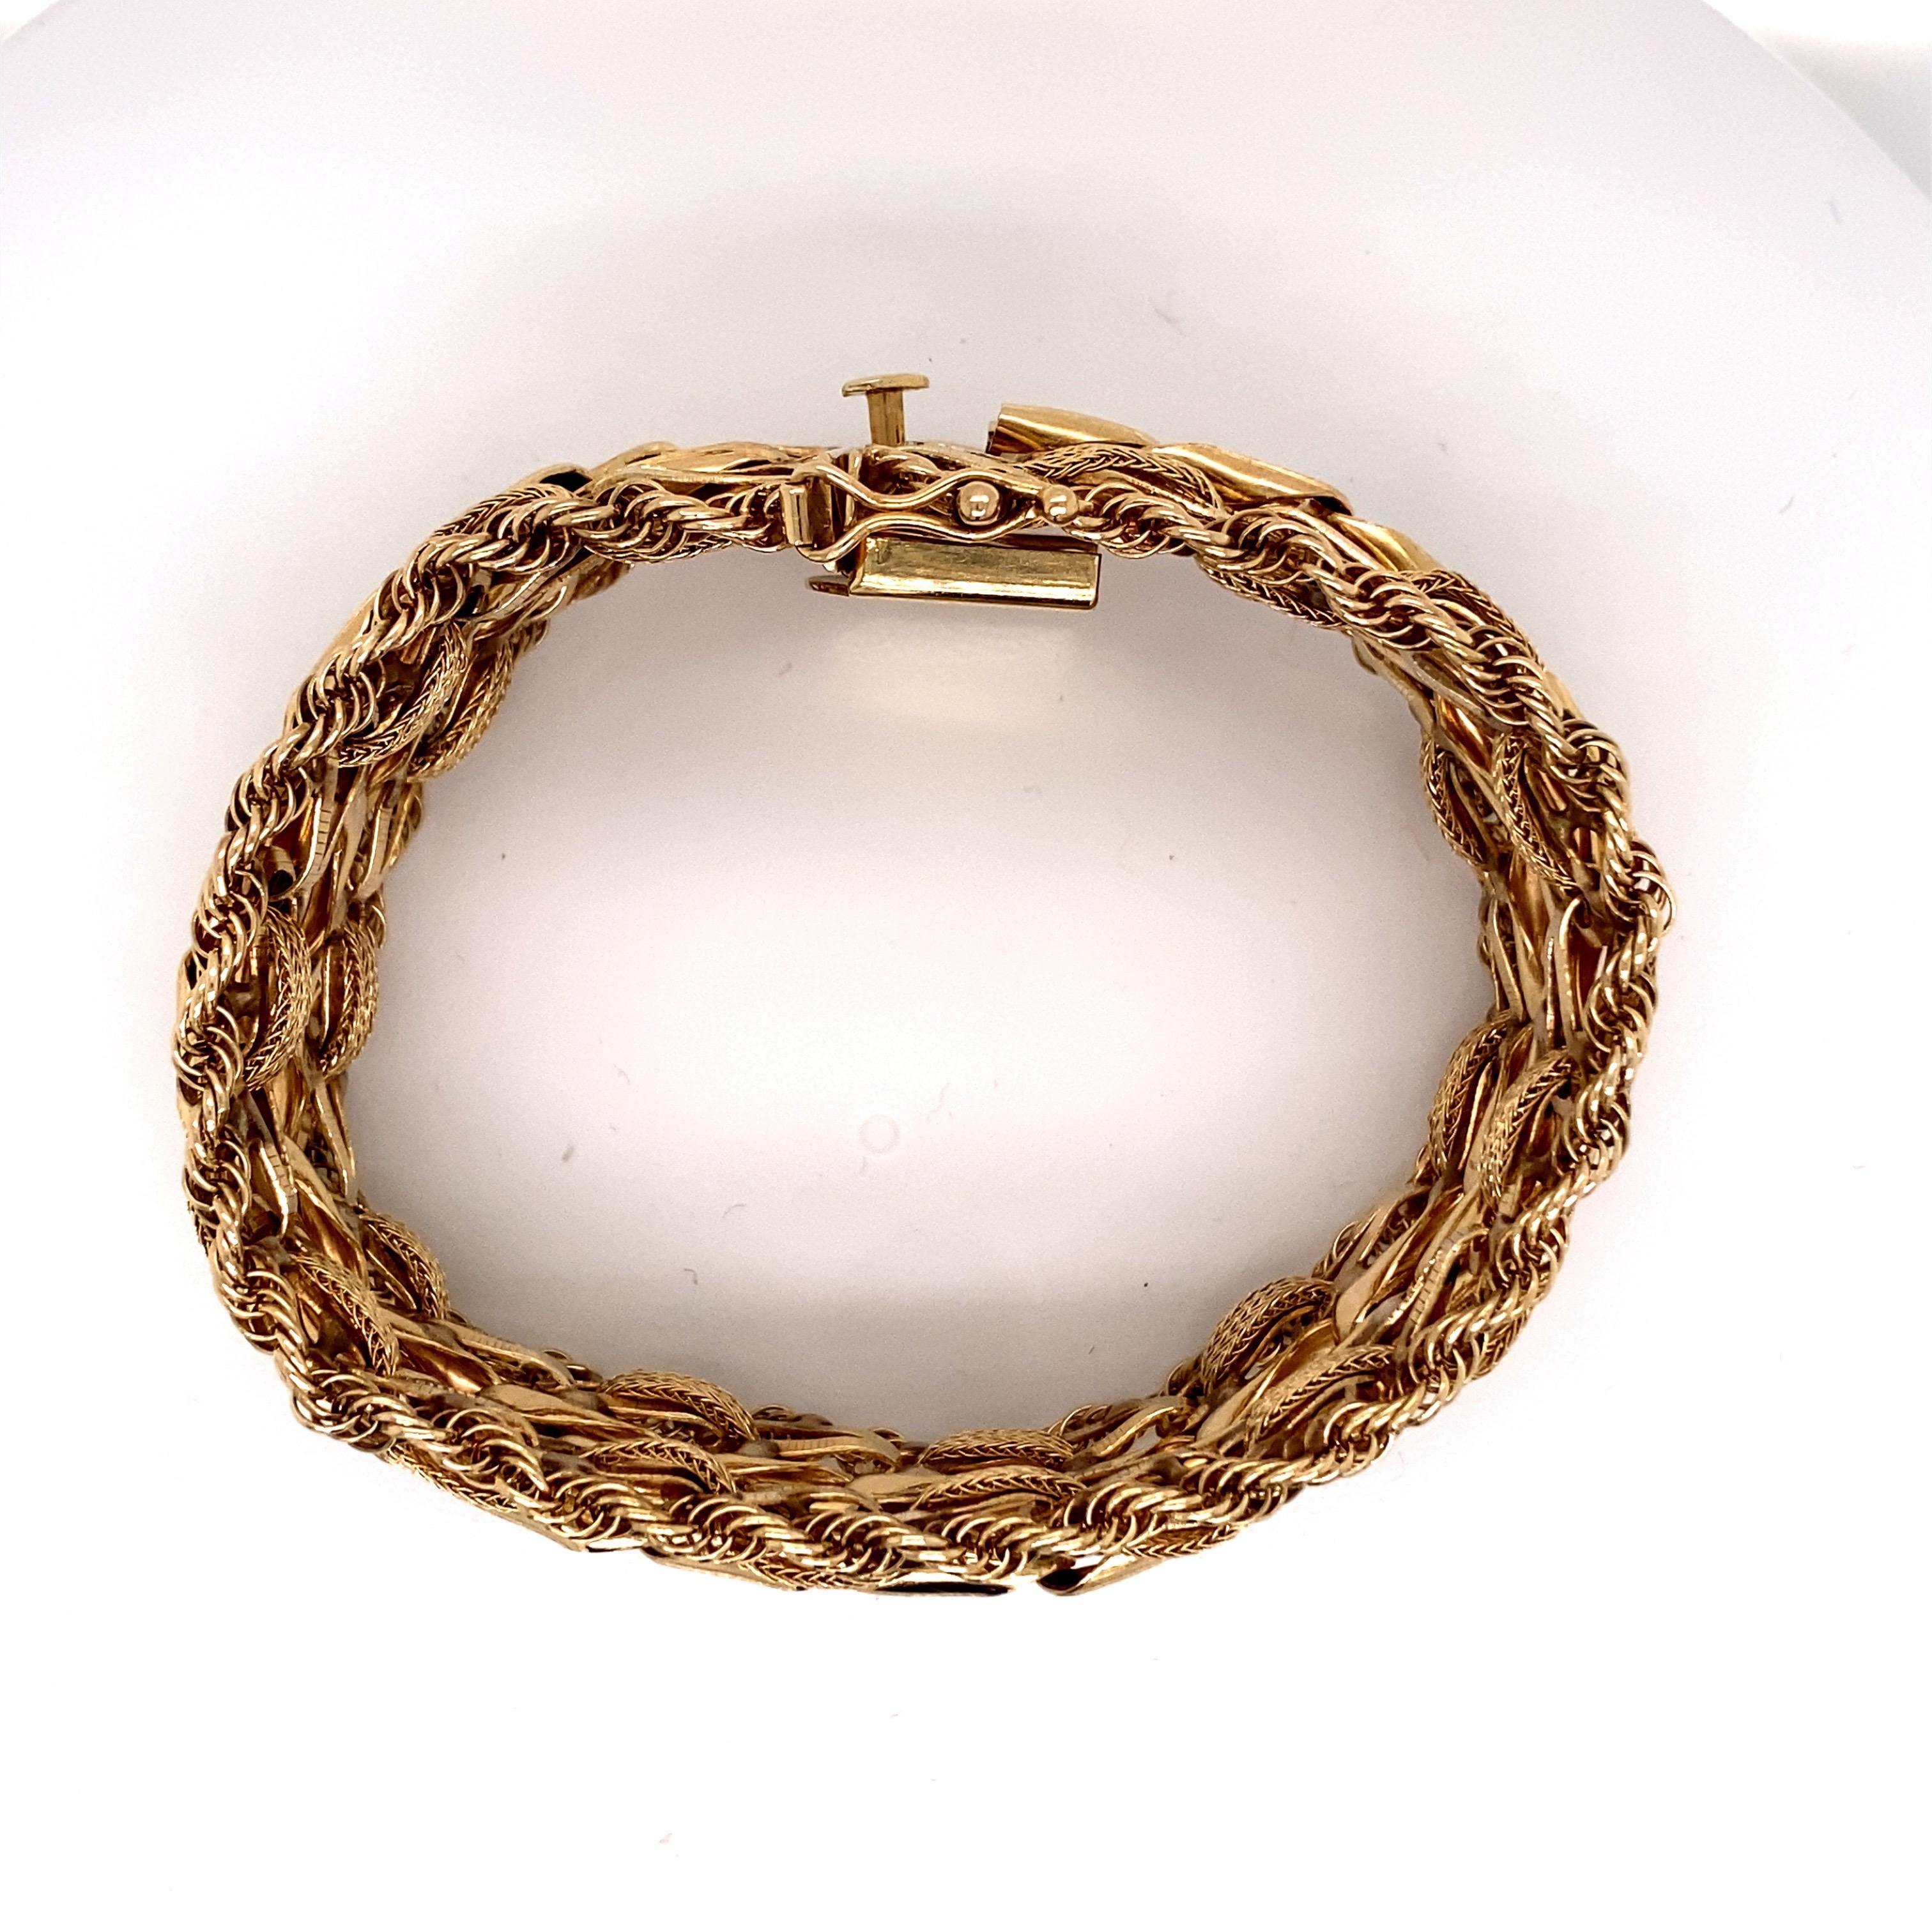 Vintage 1960s 14KY Gold Woven Wheat Link mit Rope Edge Wide Charm Bracelet - Das Armband messen 7,15 cm lang und 1 Zoll breit und verfügt über einen versteckten Verschluss mit einer Figur 8 Sicherheit. Für zusätzliche Sicherheit gibt es 2